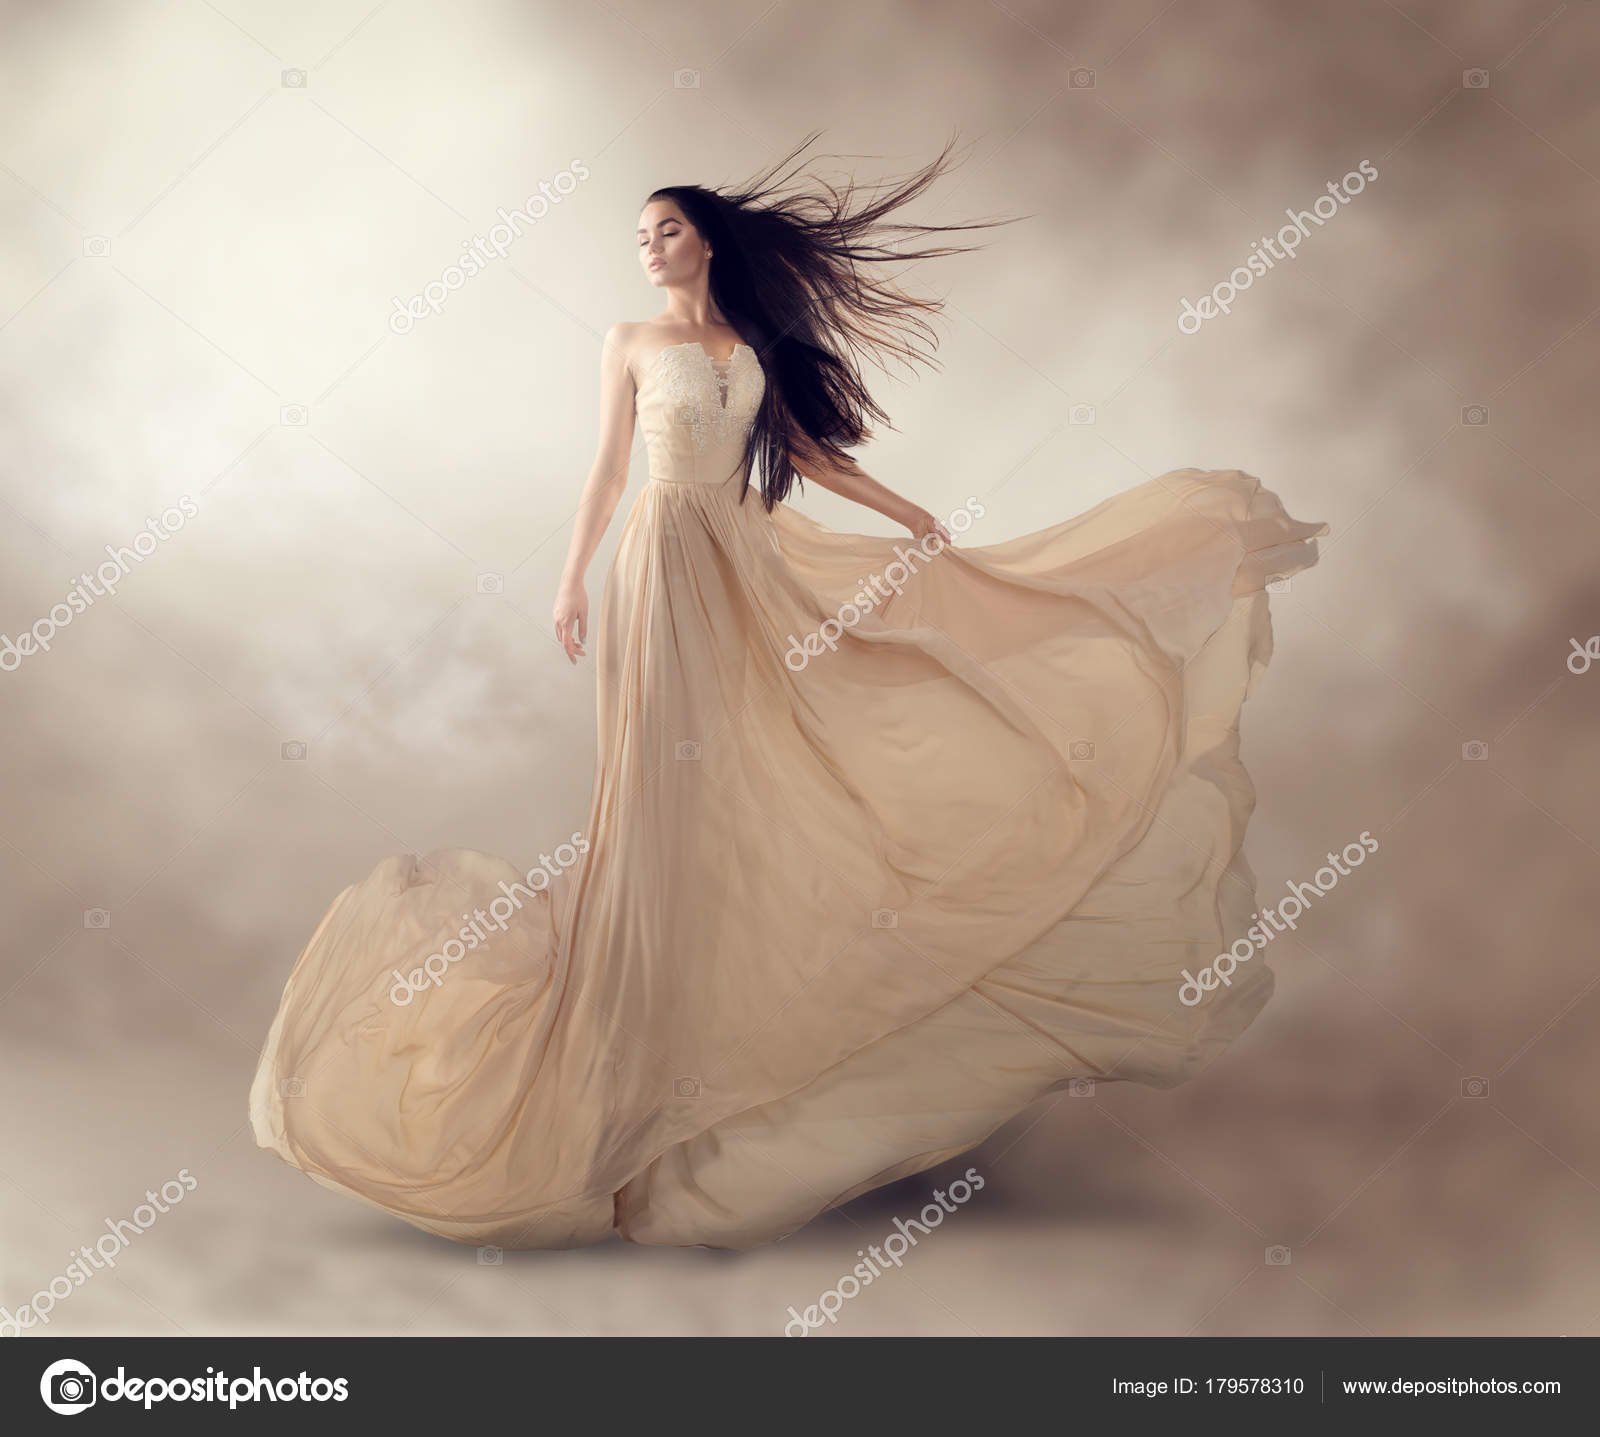 flowing chiffon dress